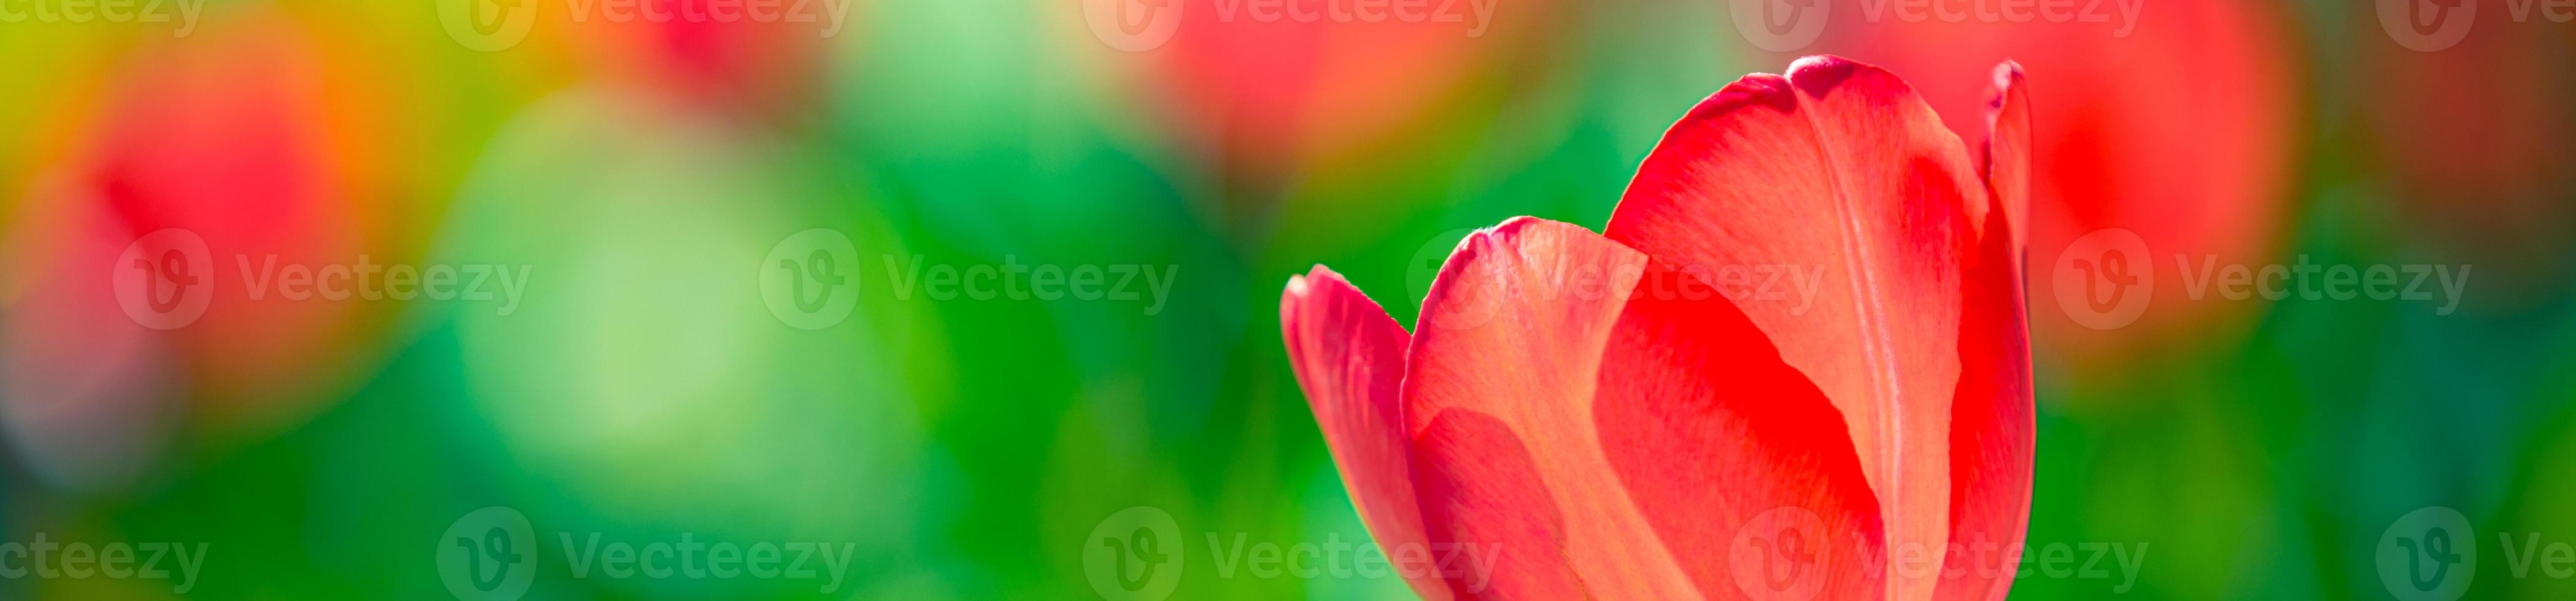 Wunderschönes Blumenstraußpanorama aus roten, weißen und rosafarbenen Tulpen in der Frühlingsnatur für Kartendesign und Webbanner. ruhige nahaufnahme, idyllische romantische liebesblumennaturlandschaft. abstraktes verschwommenes üppiges Laub foto